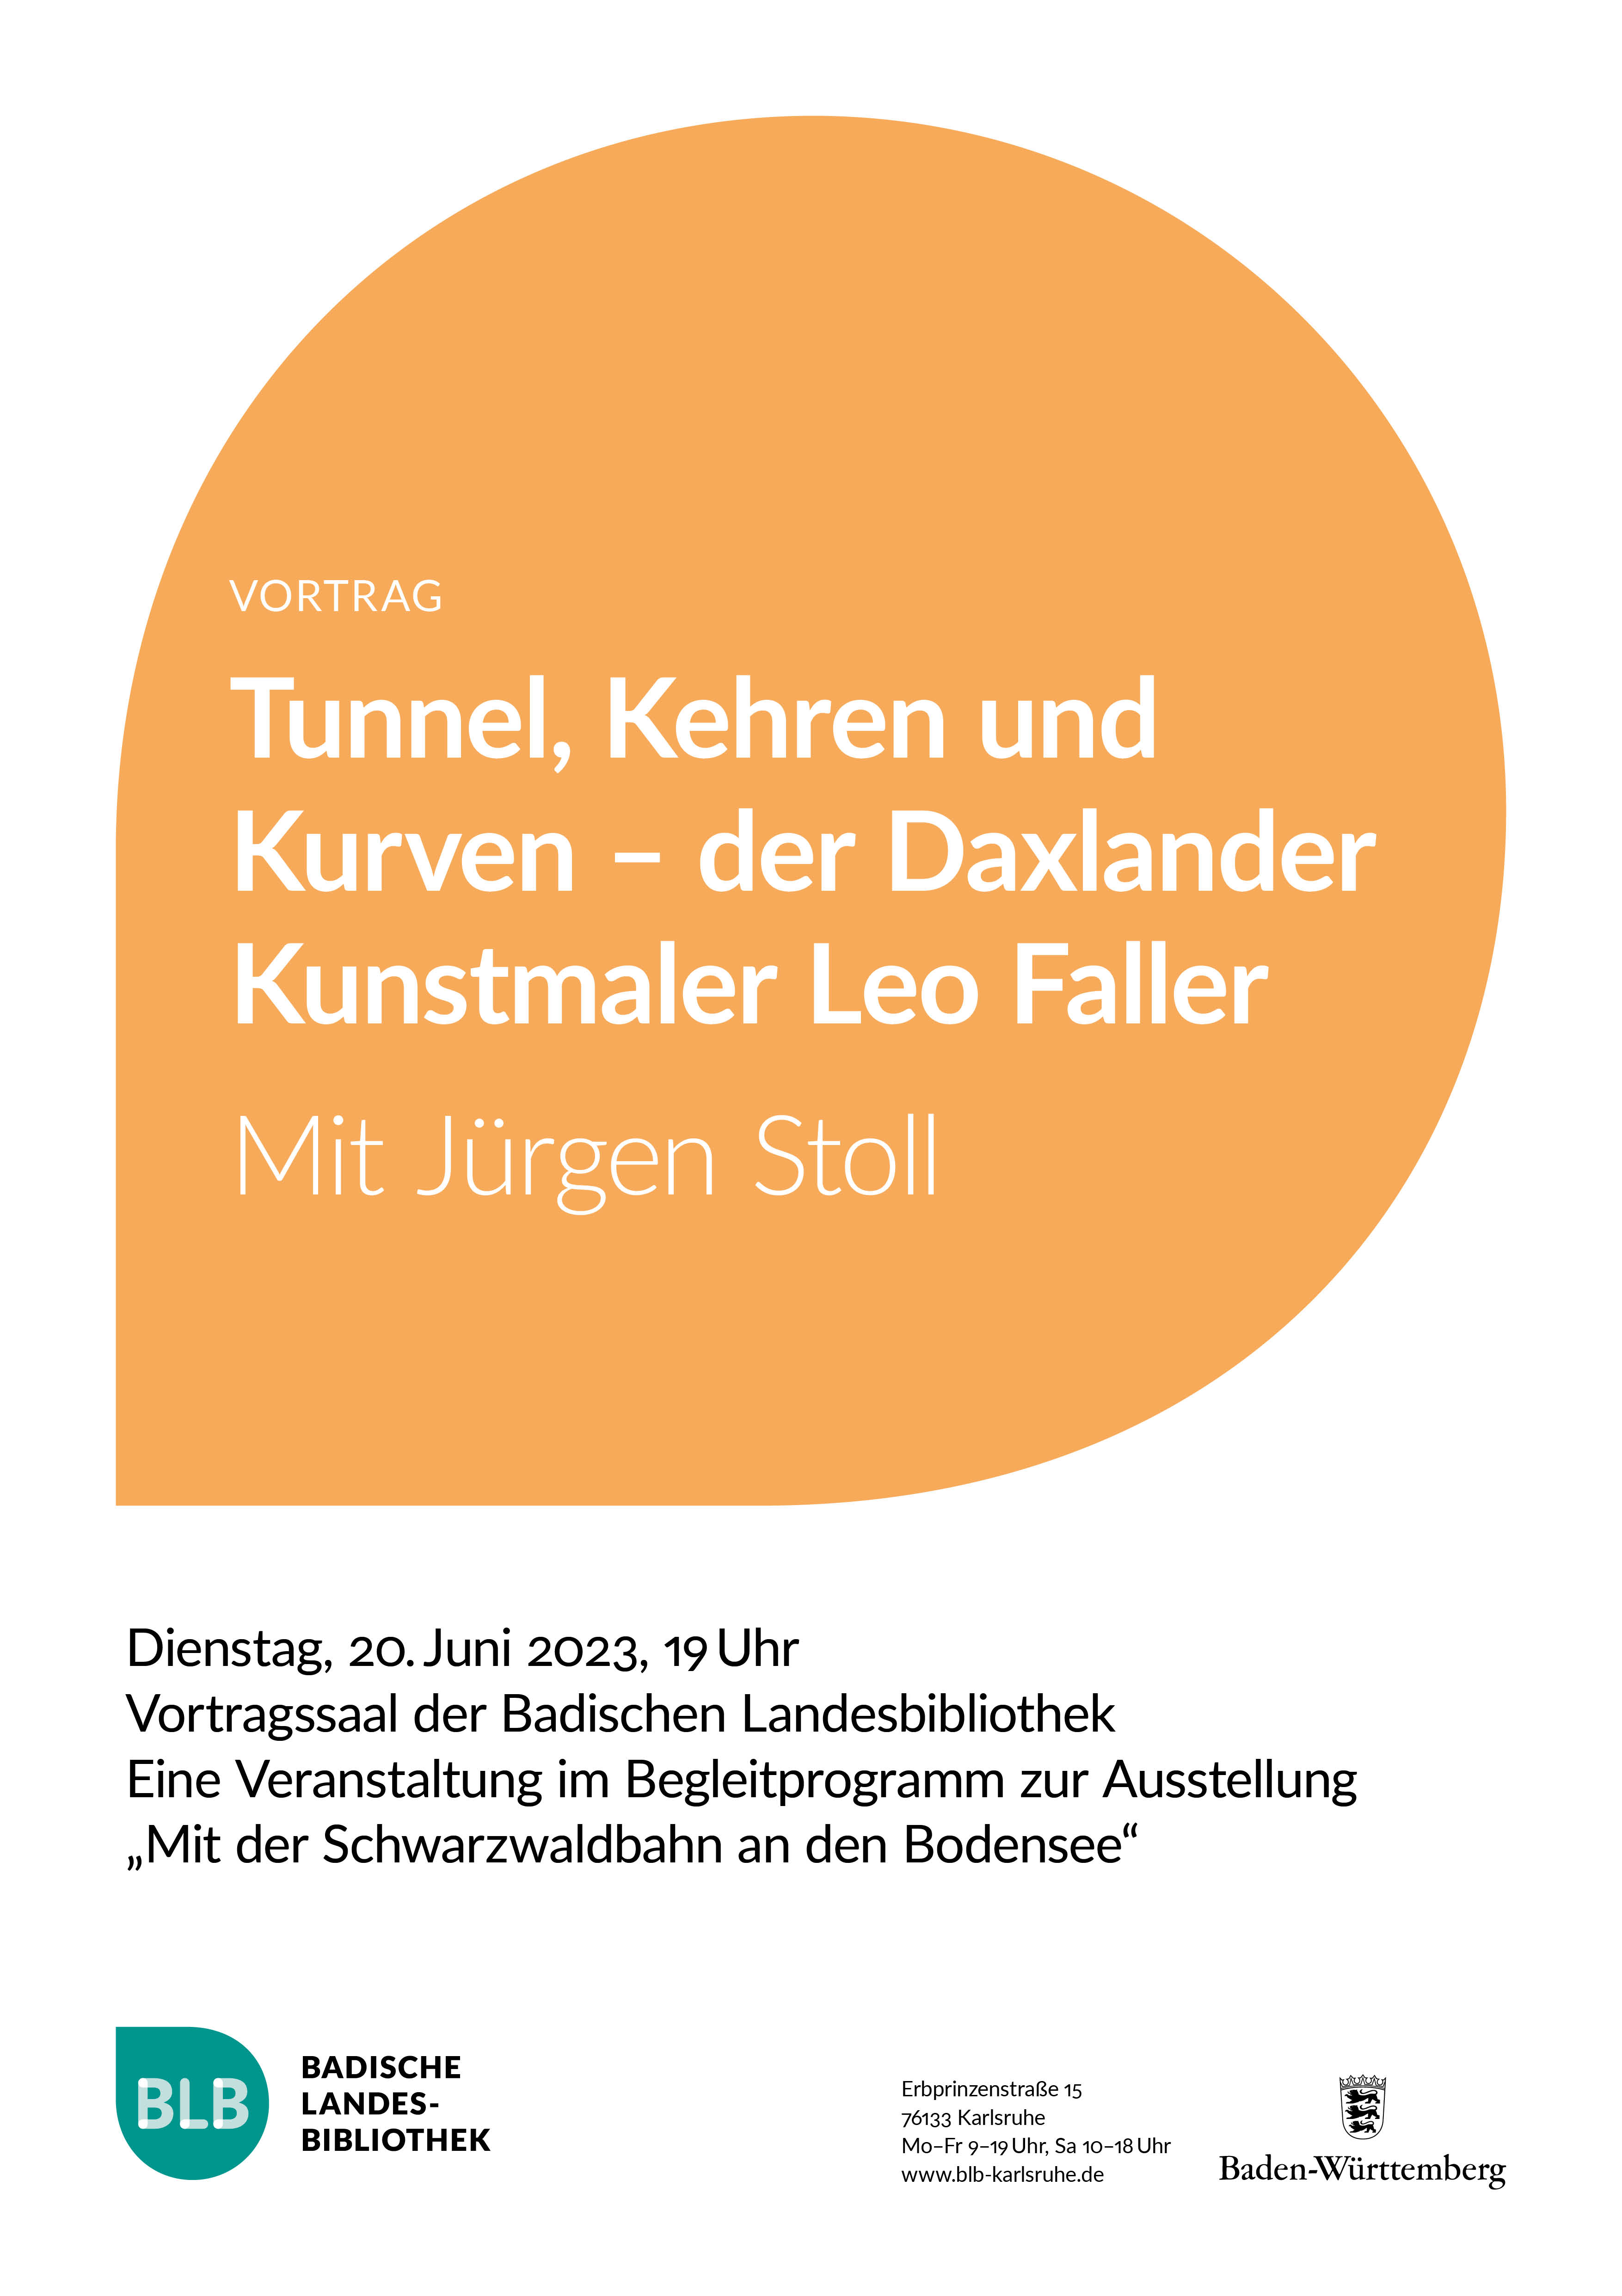 Zu sehen ist ein orangefarbenes Monogon mit der Aufschrift "Tunnel, Kehren und Kurven - der Daxlander Kunstmaler Leo Faller". Der Vortrag mit Jürgen Stoll findet am Dienstag, dem 20. Juni 2023 um 19 Uhr statt. 